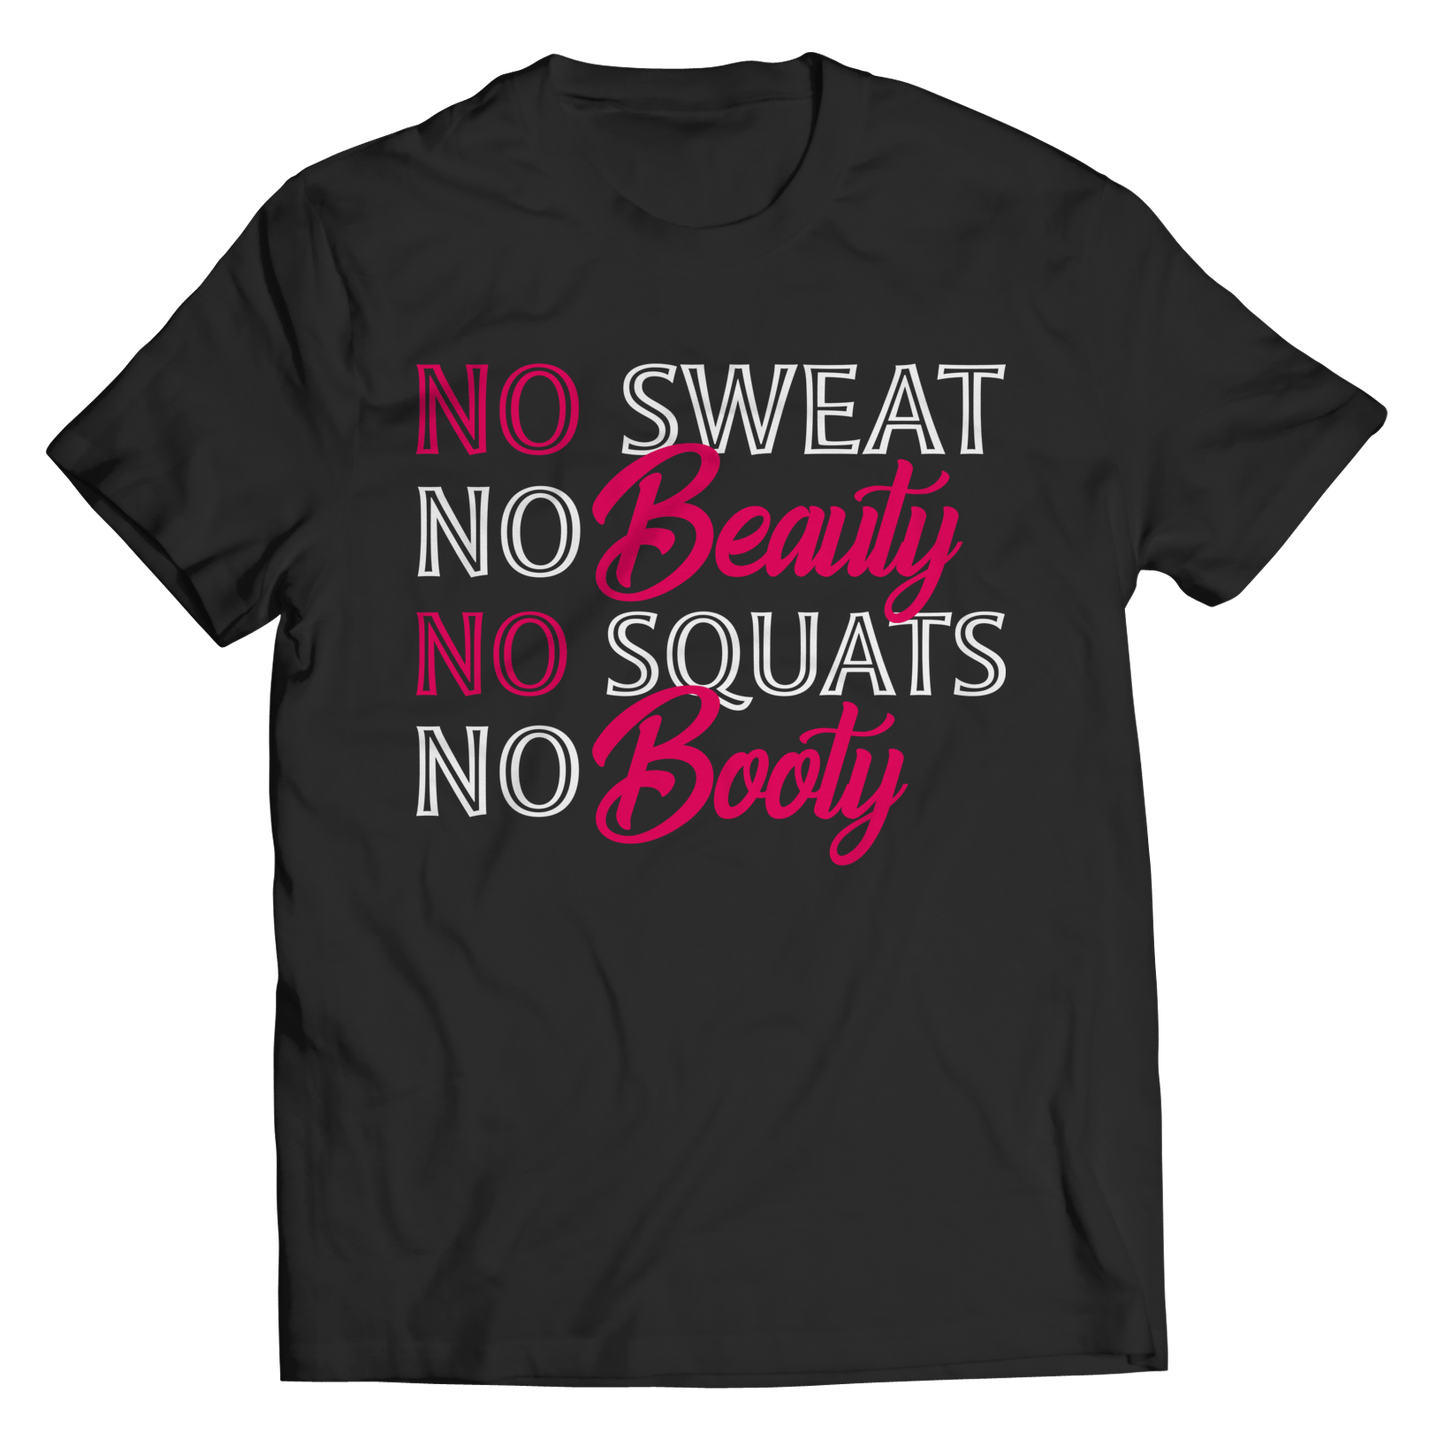 Unisex Shirt - No Sweat No Beauty No Squats No Booty